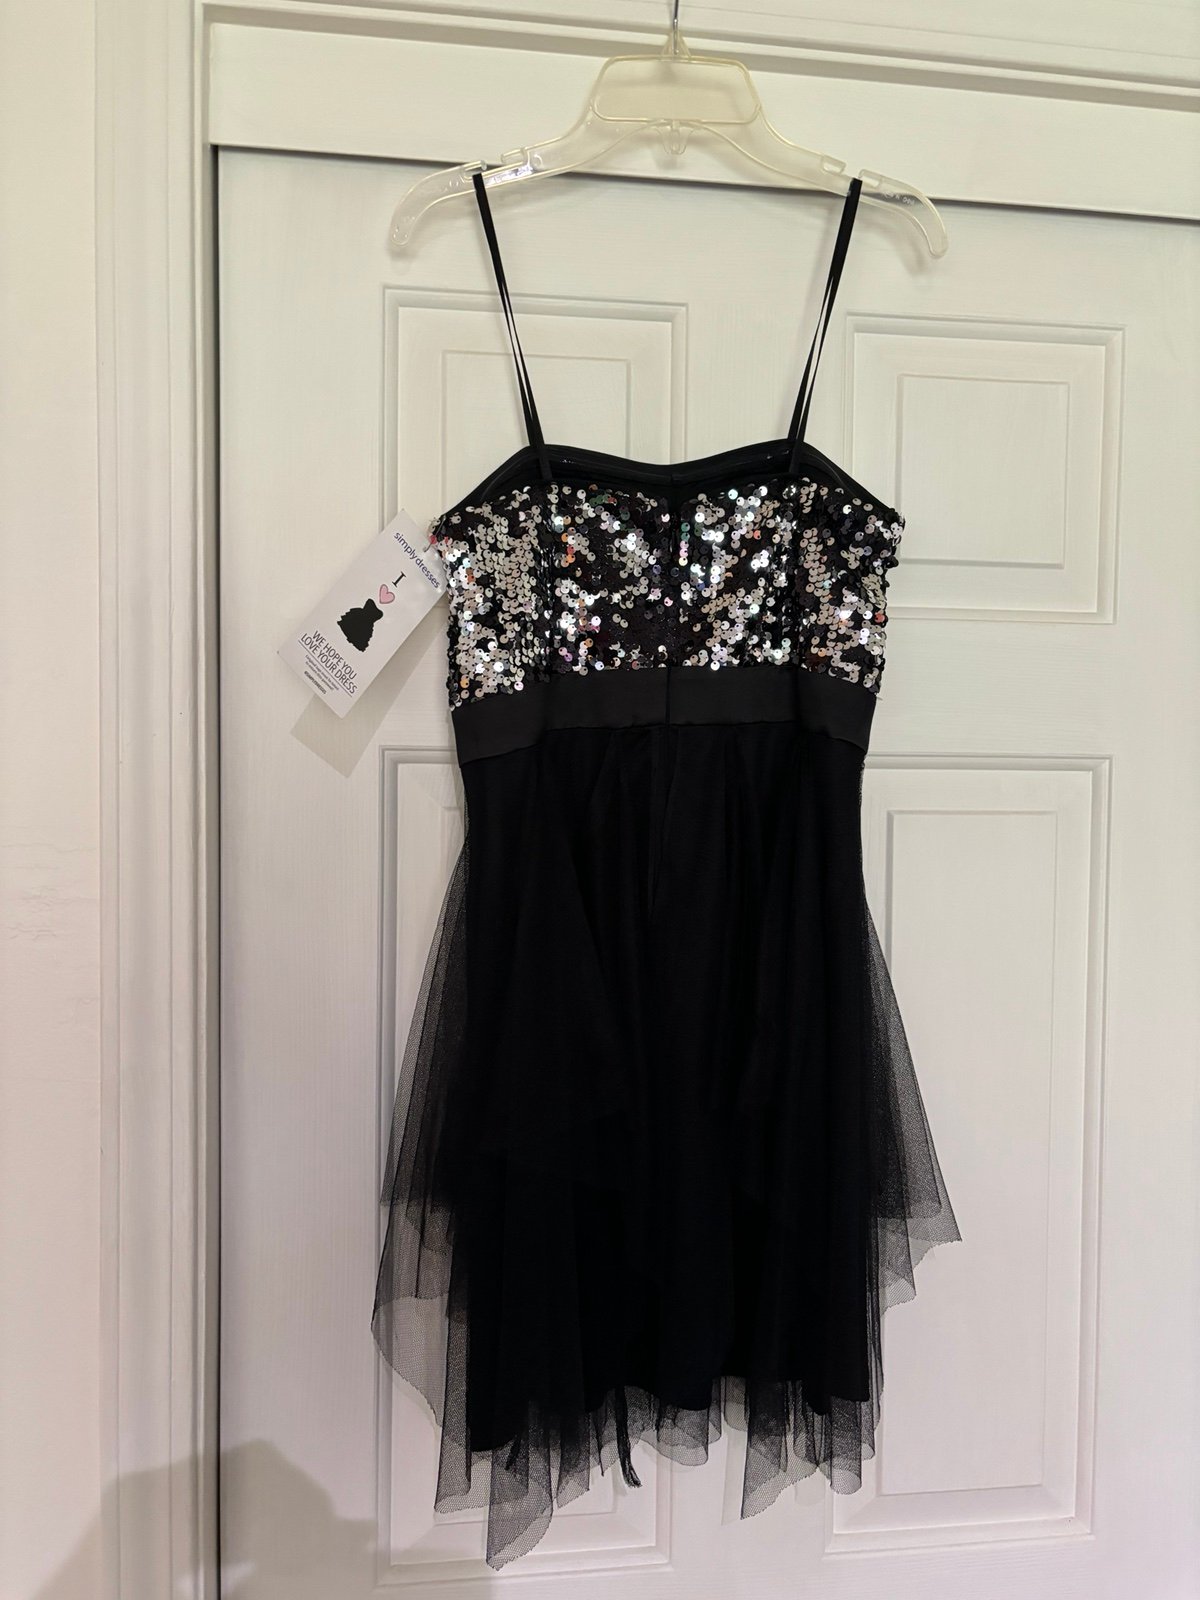 Buy black formal dress poZV0Z4t9 no tax